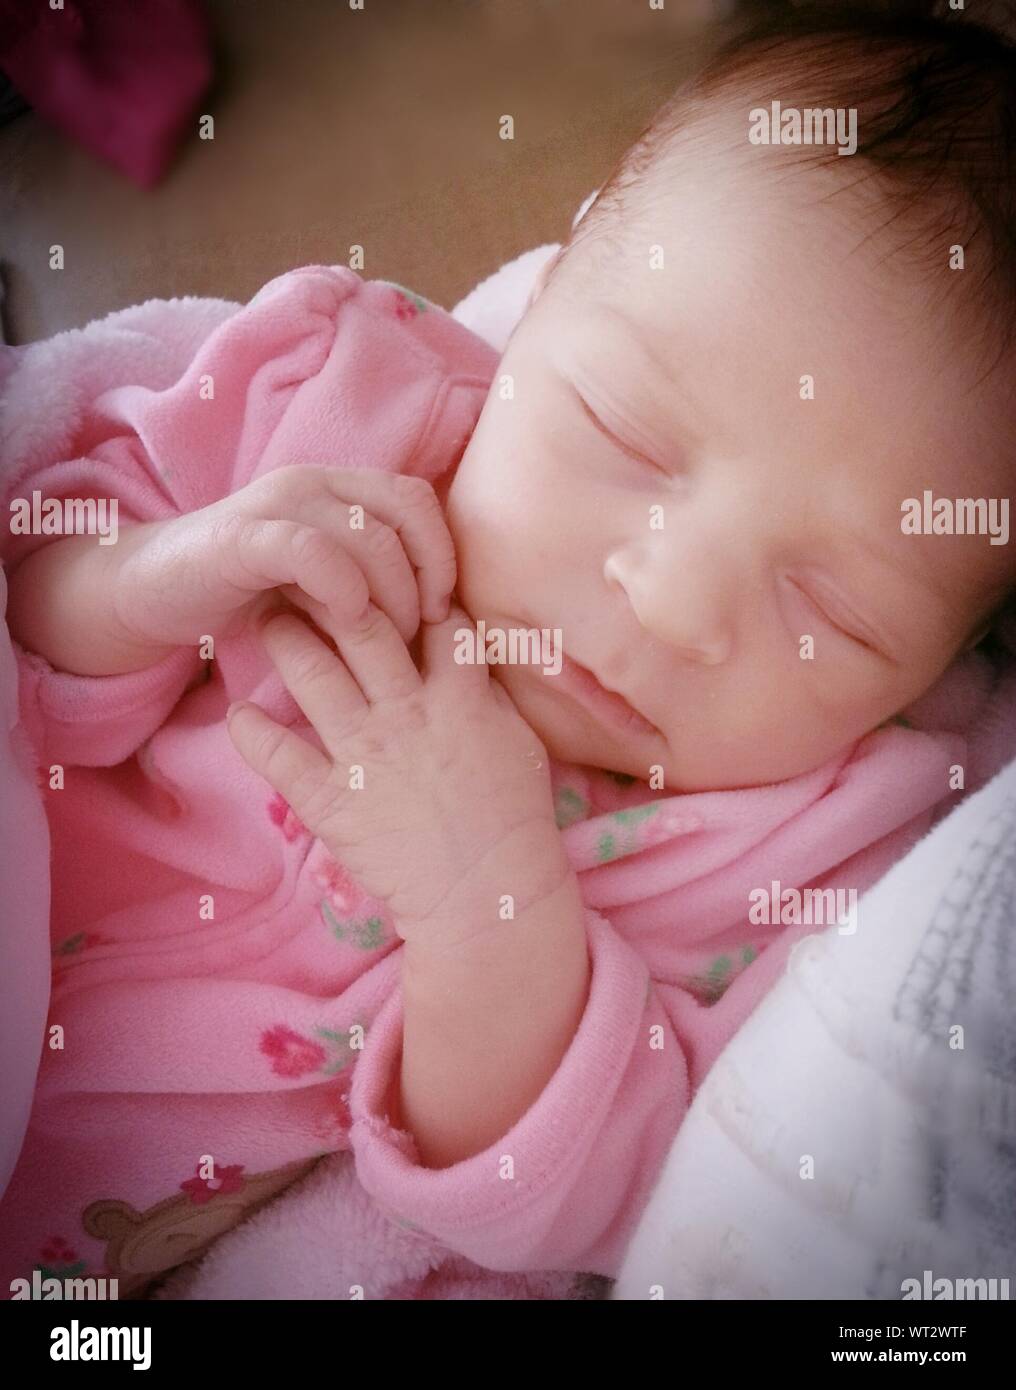 Newborn Child Sleeping At Home Stock Photo